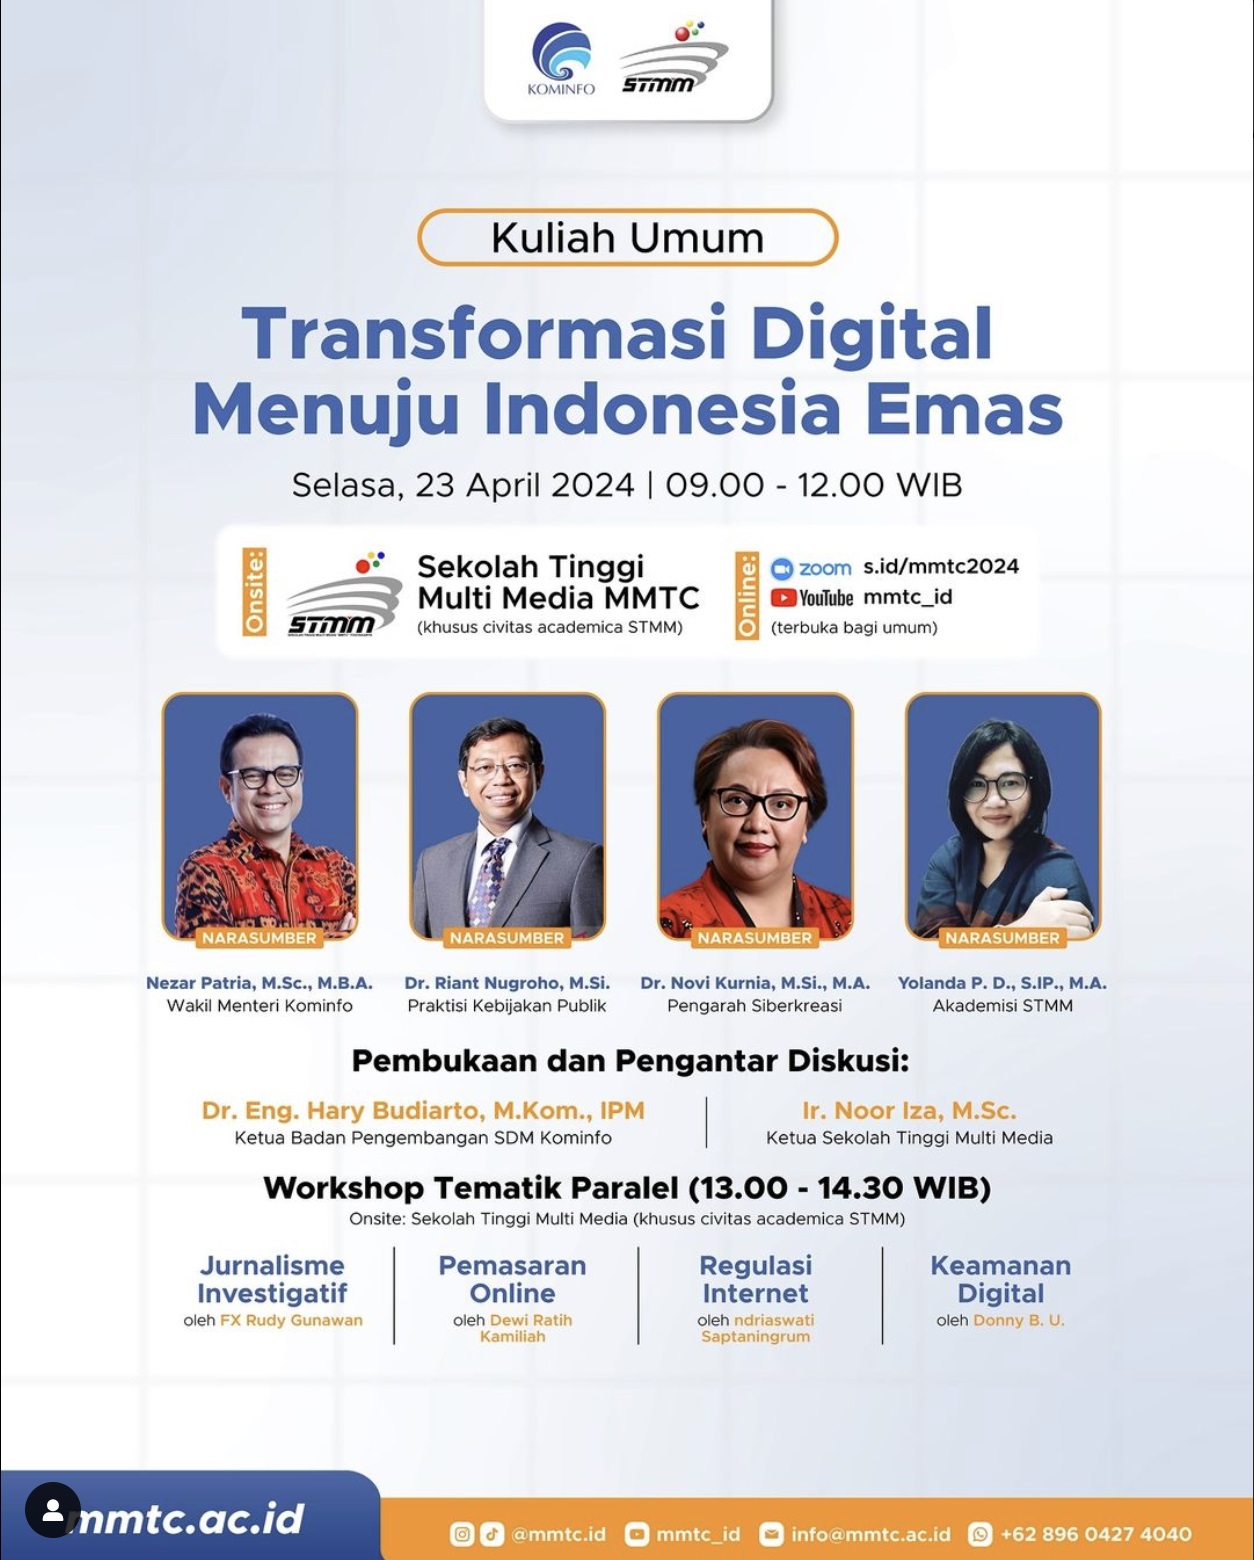 KULIAH UMUM: TRANSFORMASI DIGITAL MENUJU INDONESIA EMAS